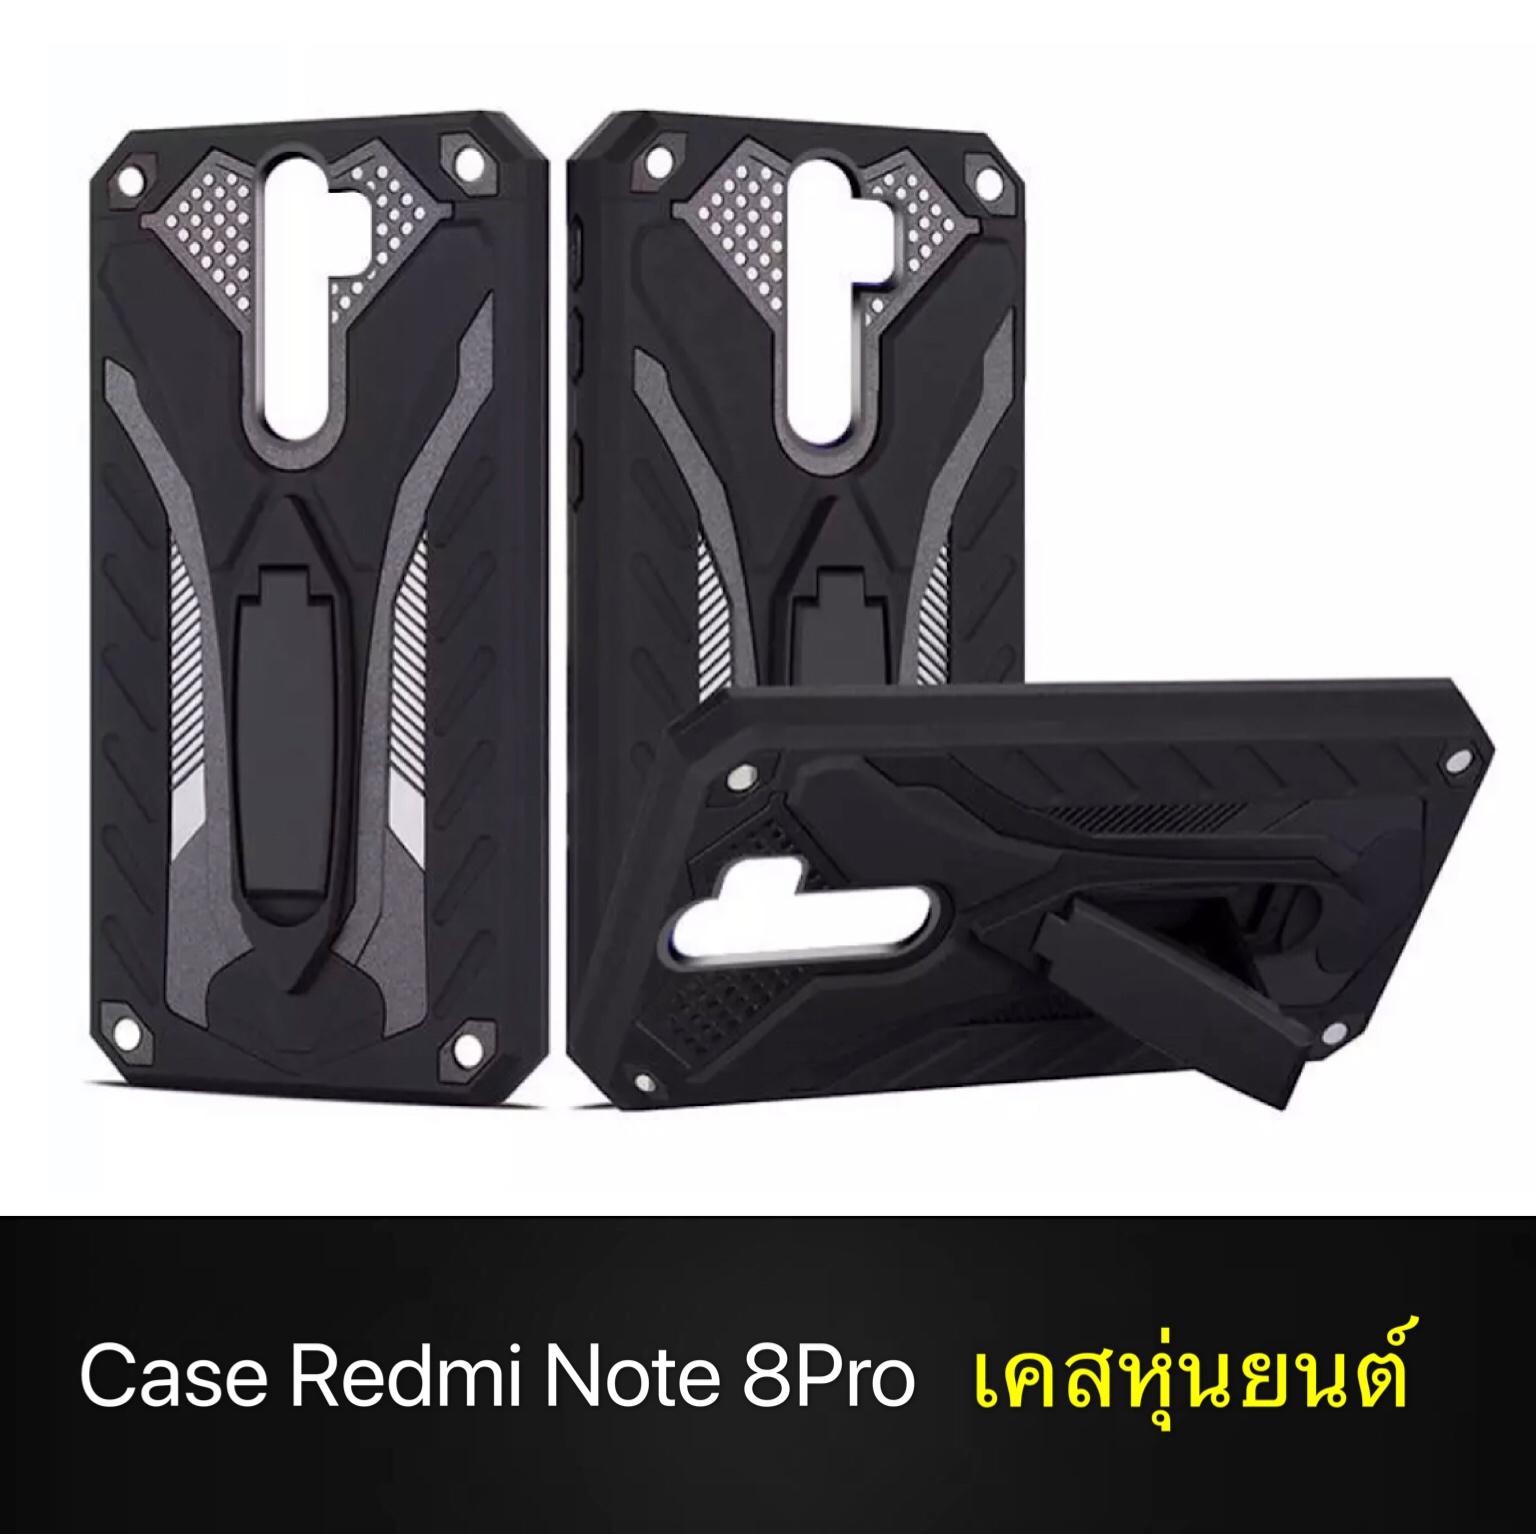 พร้อมส่งทันที Case Xiaomi Redmi Note 8 Pro เคสเสี่ยวมี่ เรดมี่โน๊ต8โปร เคสหุ่นยนต์ เคสไฮบริด มีขาตั้ง เคสกันกระแทก case xiaomi redmi note 8pro  เคสโทรศัพท์เสี่ยวมี่ เรดมี่โน๊ต8โปร สินค้าใหม่ TPU CASE